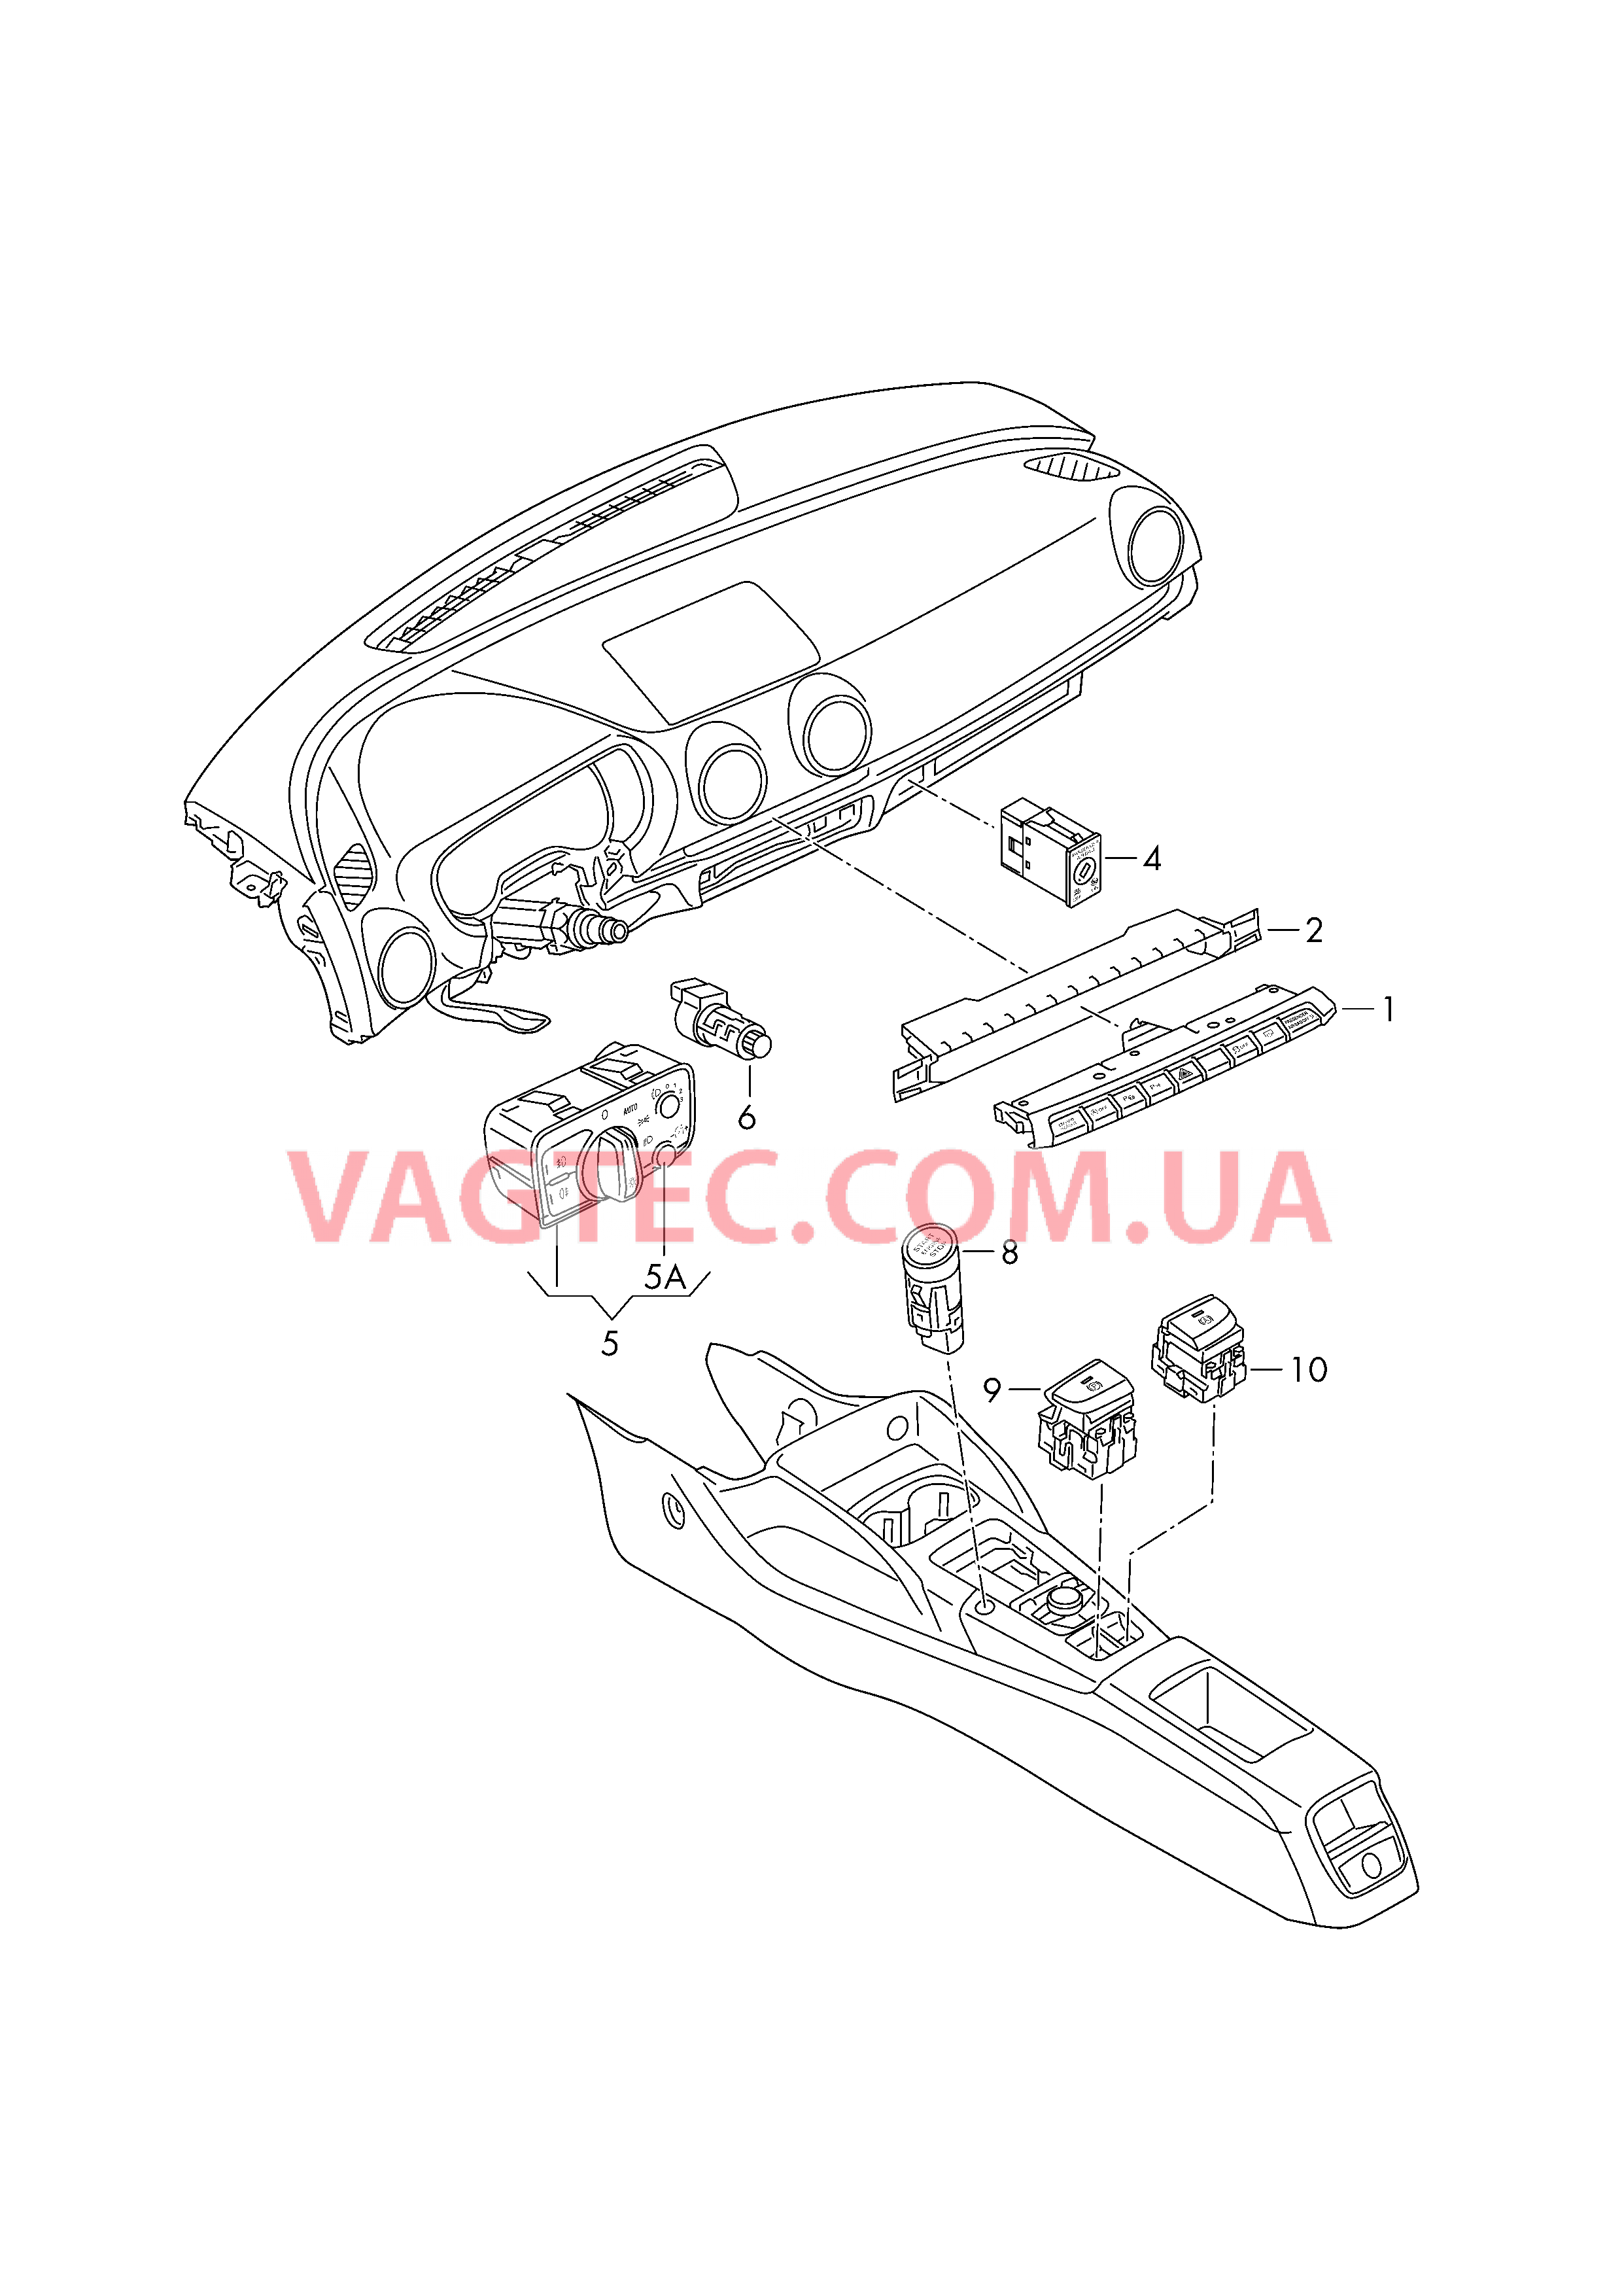 Выключатель в панели приборов Выключатель фар Выключатель в централ. консоли D             >> - 26.05.2014 для AUDI A3 2015